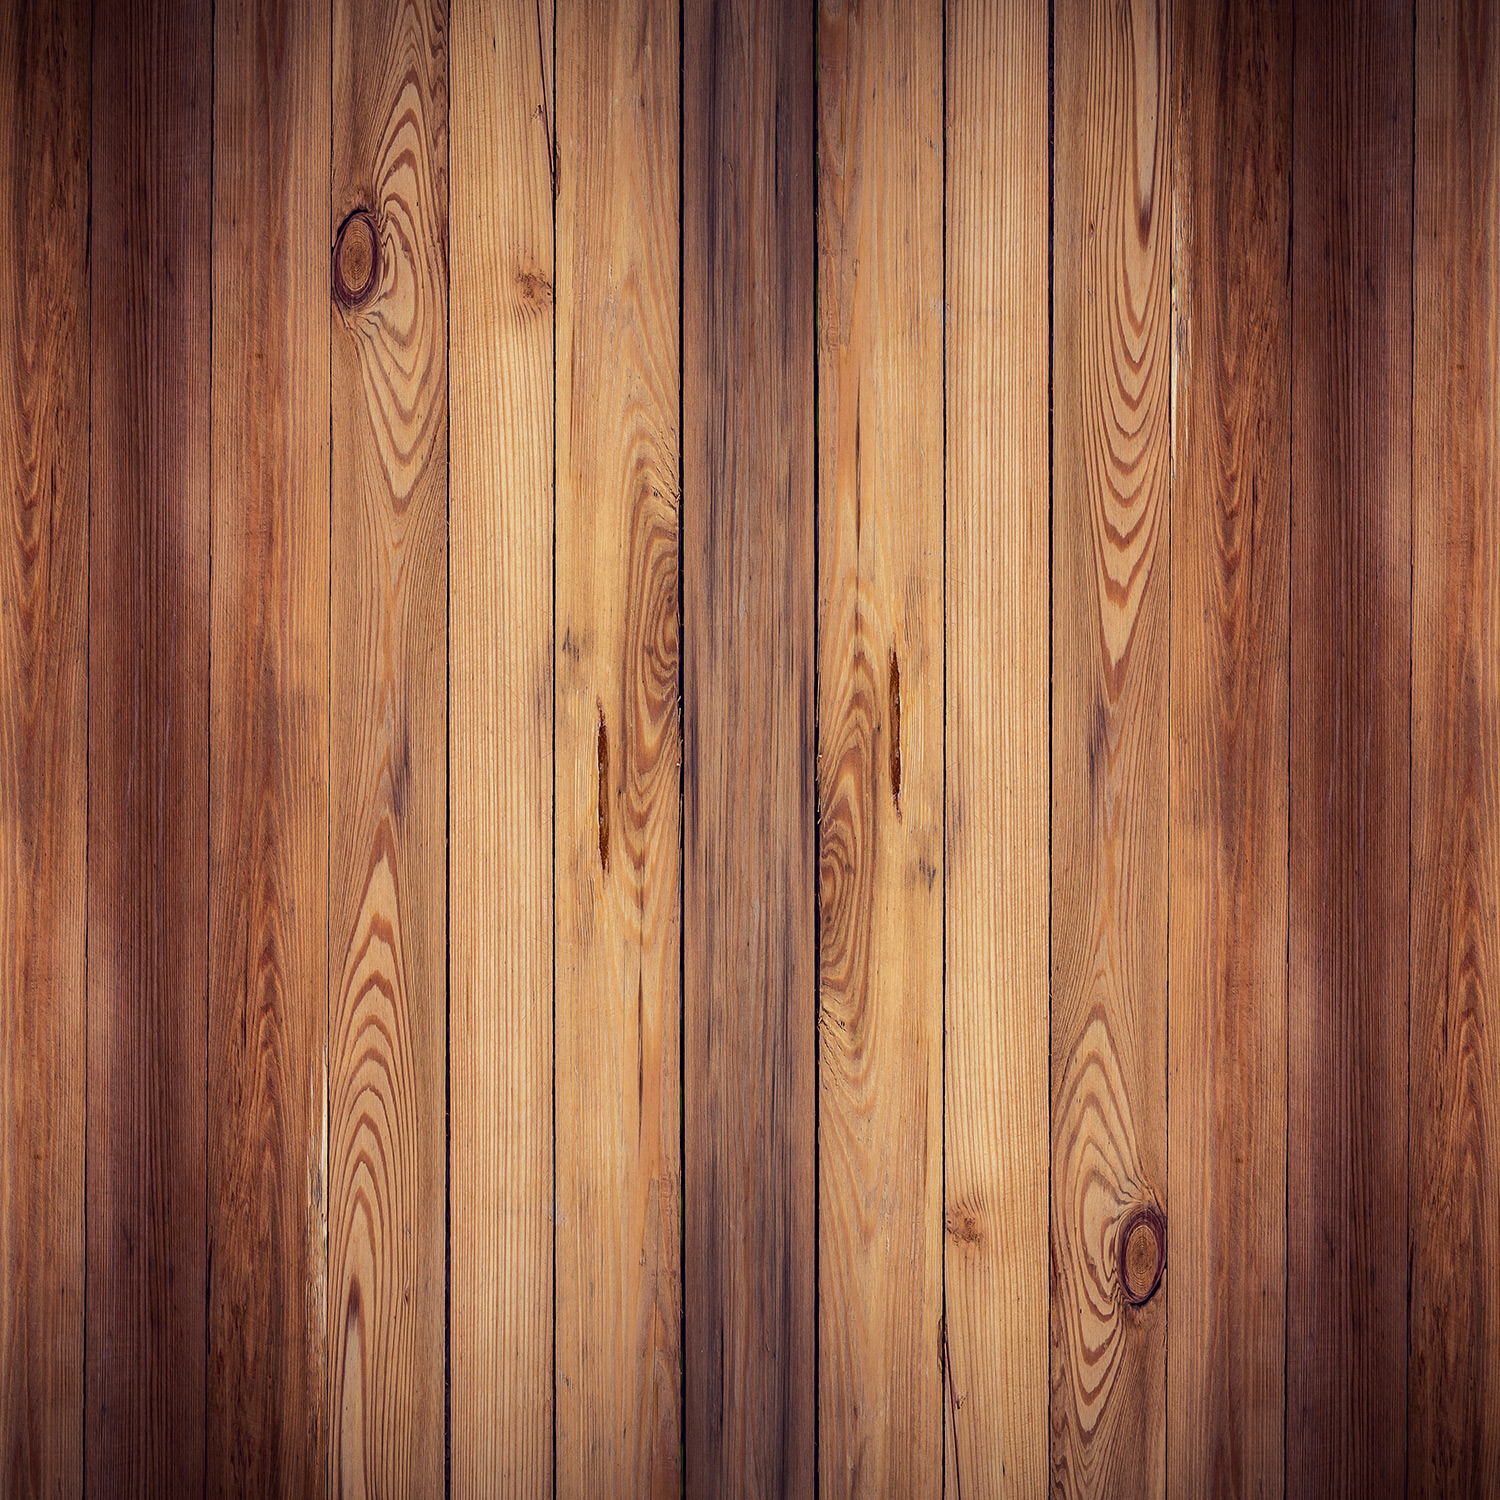 Vertical Wooden Planks HD Wallpaper